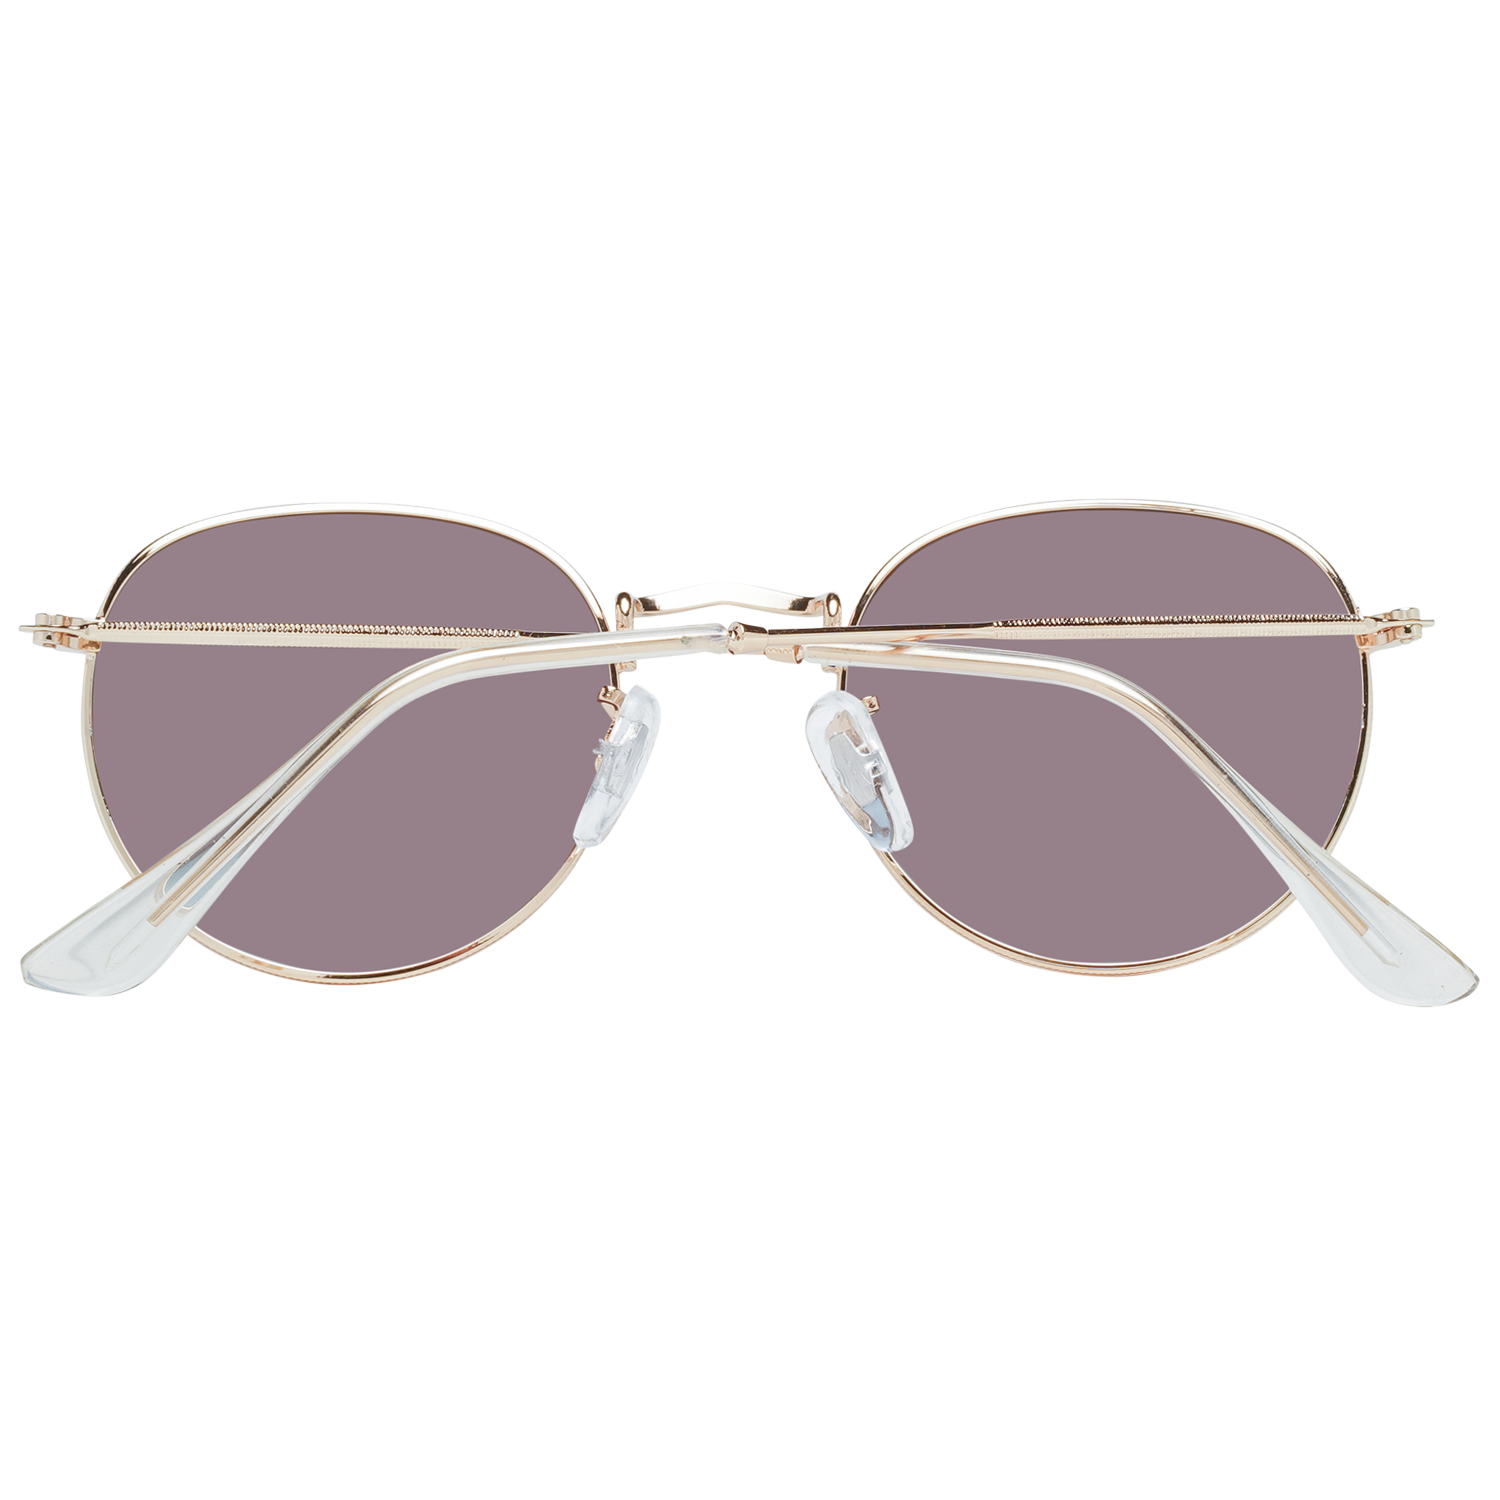 Millner Sunglasses Millner Sunglasses 0020105 Covent Garden Eyeglasses Eyewear UK USA Australia 